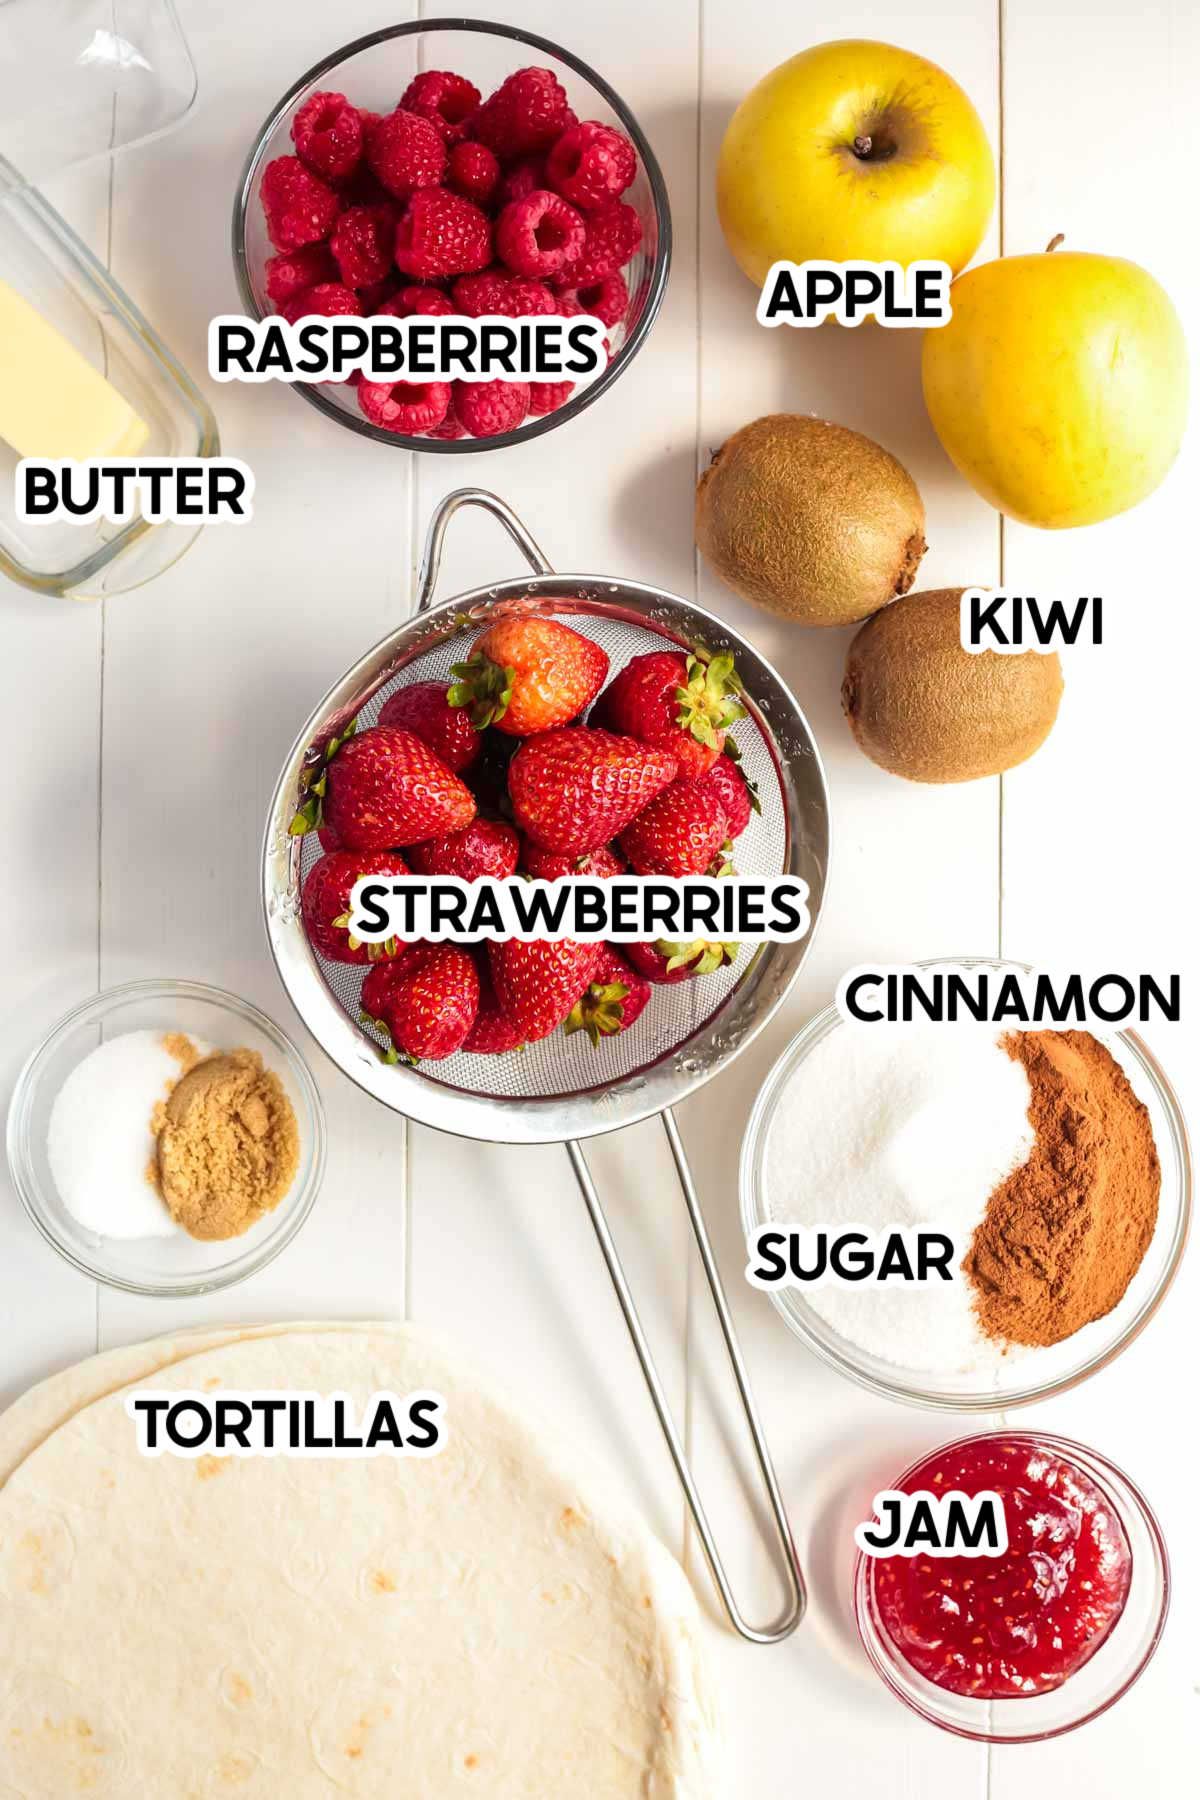 γυάλινα μπολ με φρούτα και άλλα συστατικά για σάλσα φρούτων